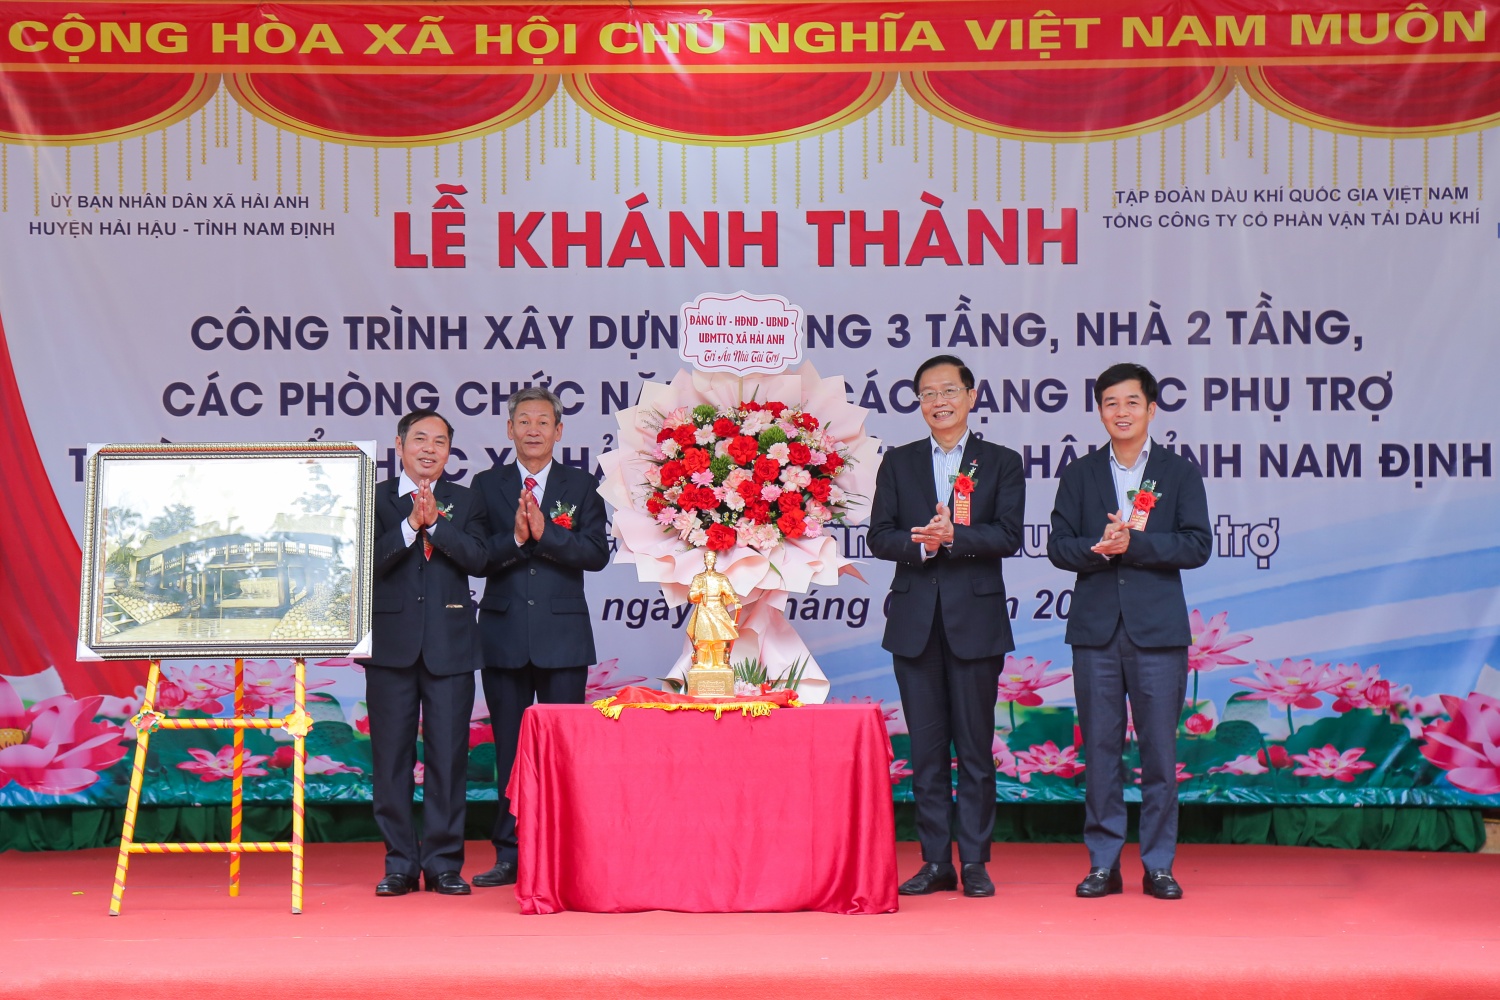 Petrovietnam/PVTrans trao hỗ trợ xây dựng nhà chức năng Trường Tiểu học Hải Anh (Nam Định)